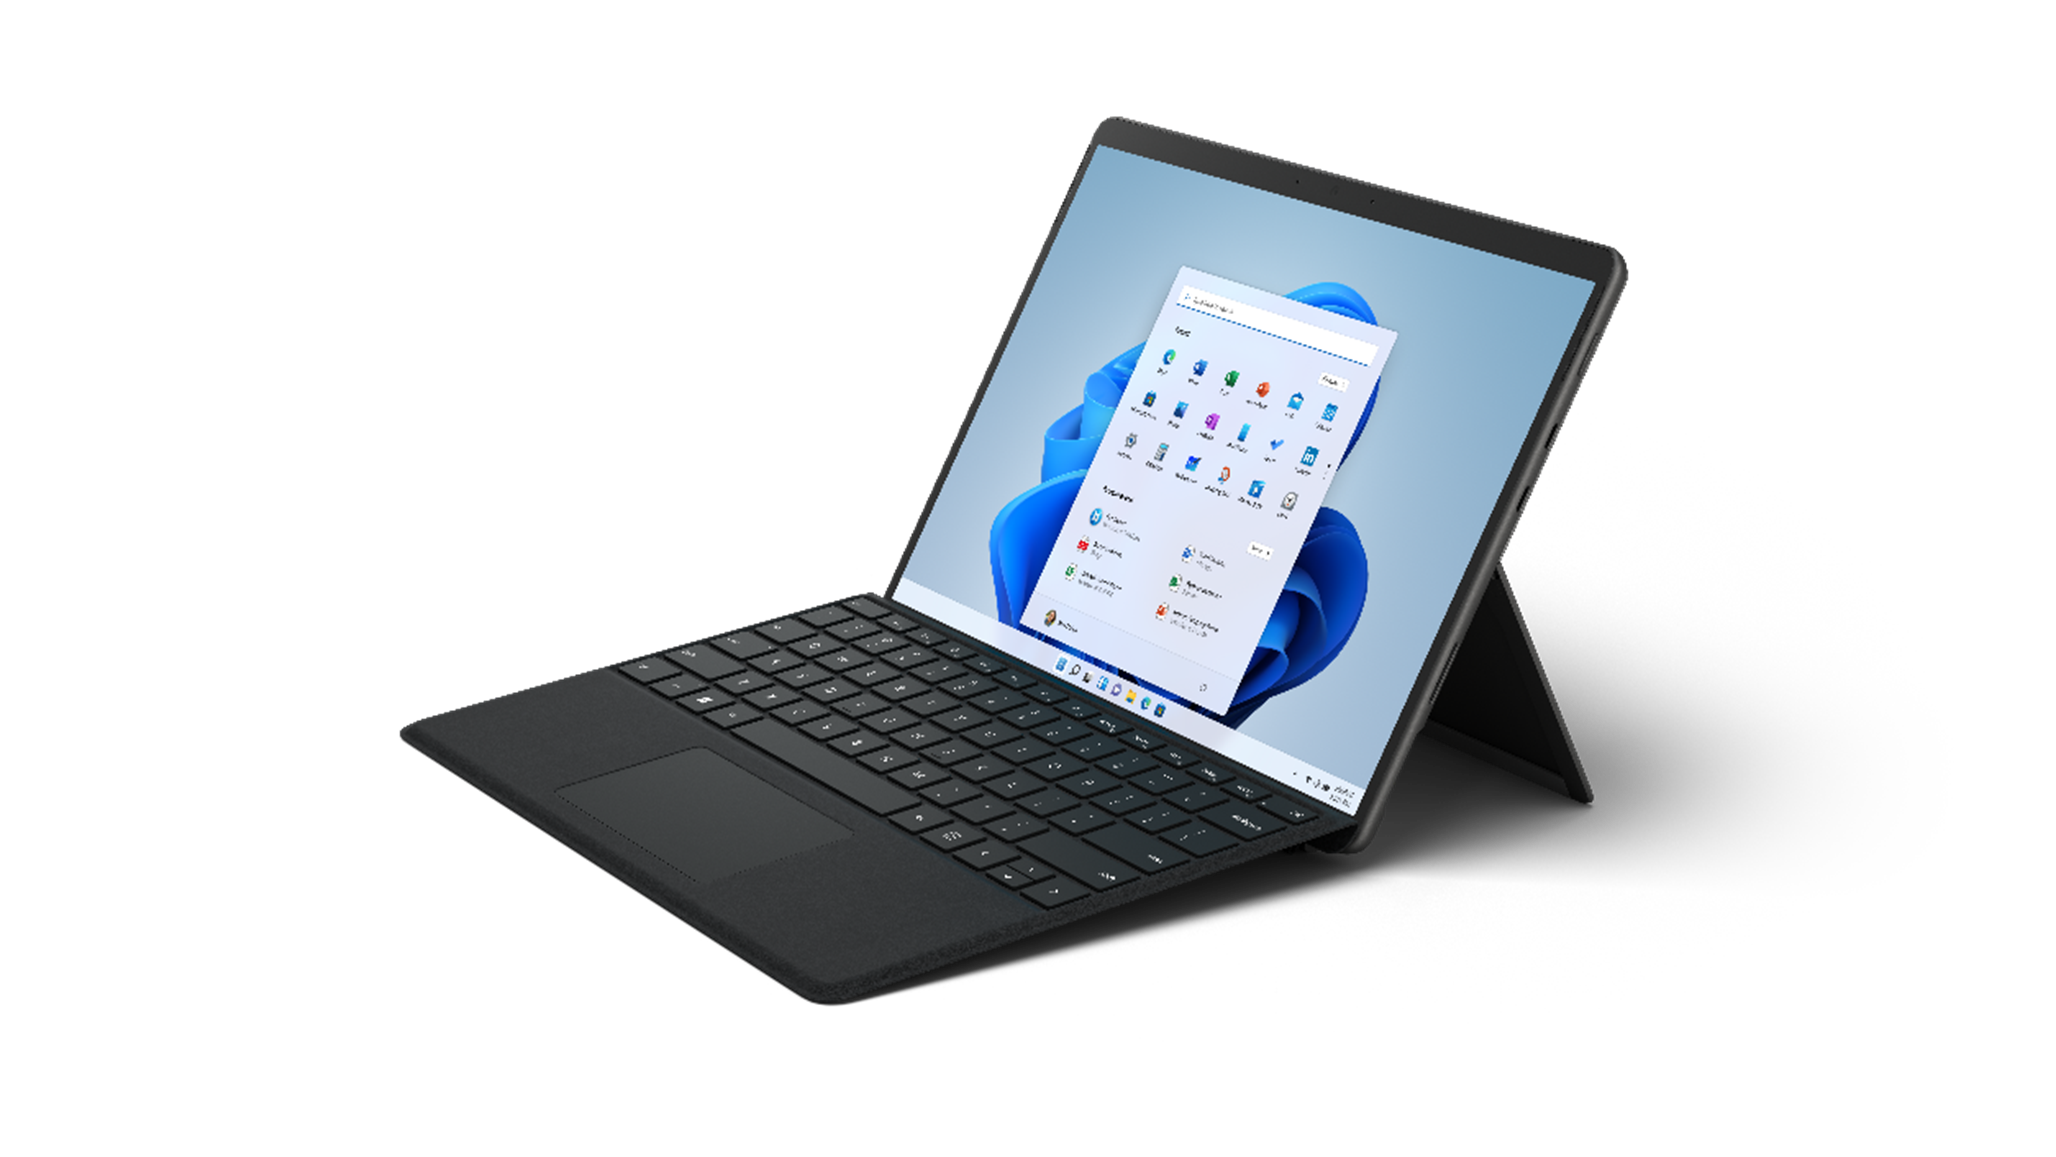 Surface Pro 4 8GB 付属品 officeなど - rehda.com